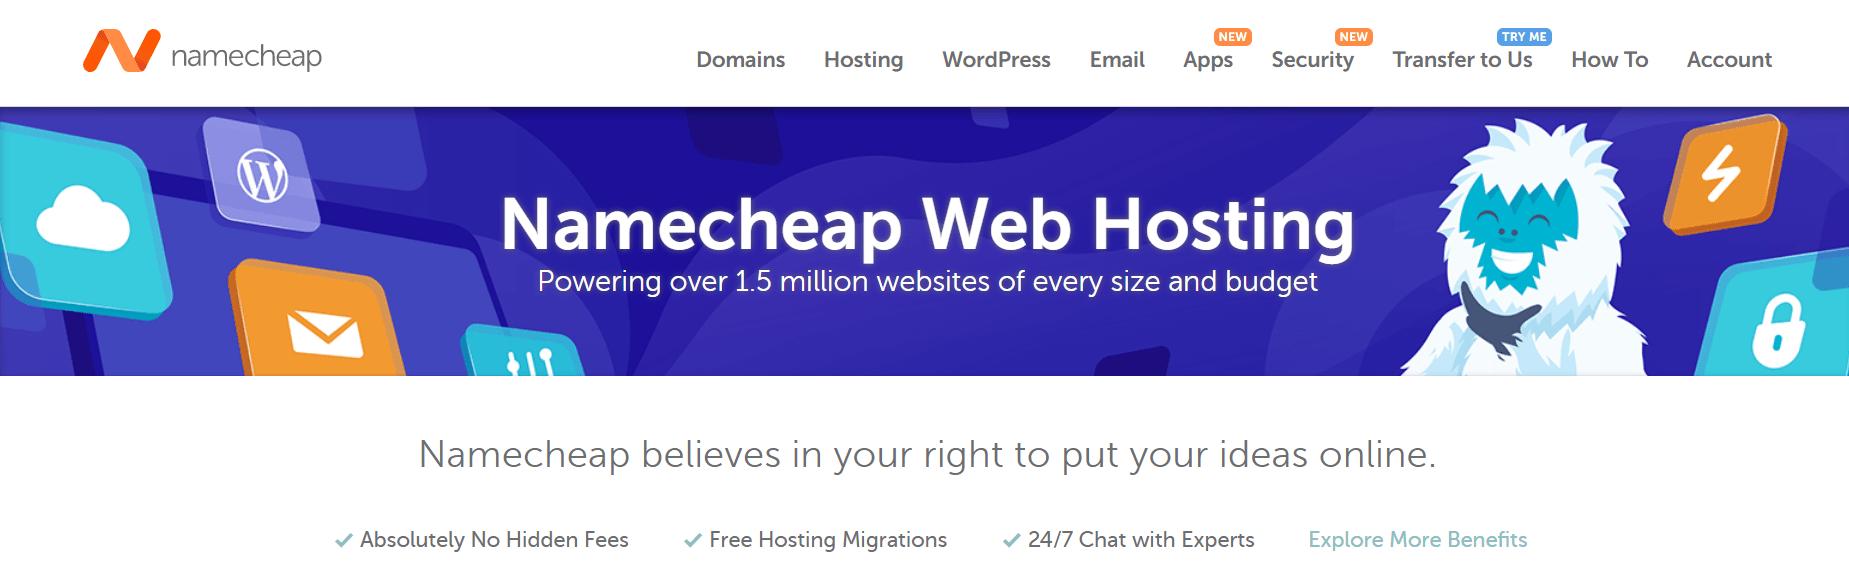 Namecheap虚拟主机页面。